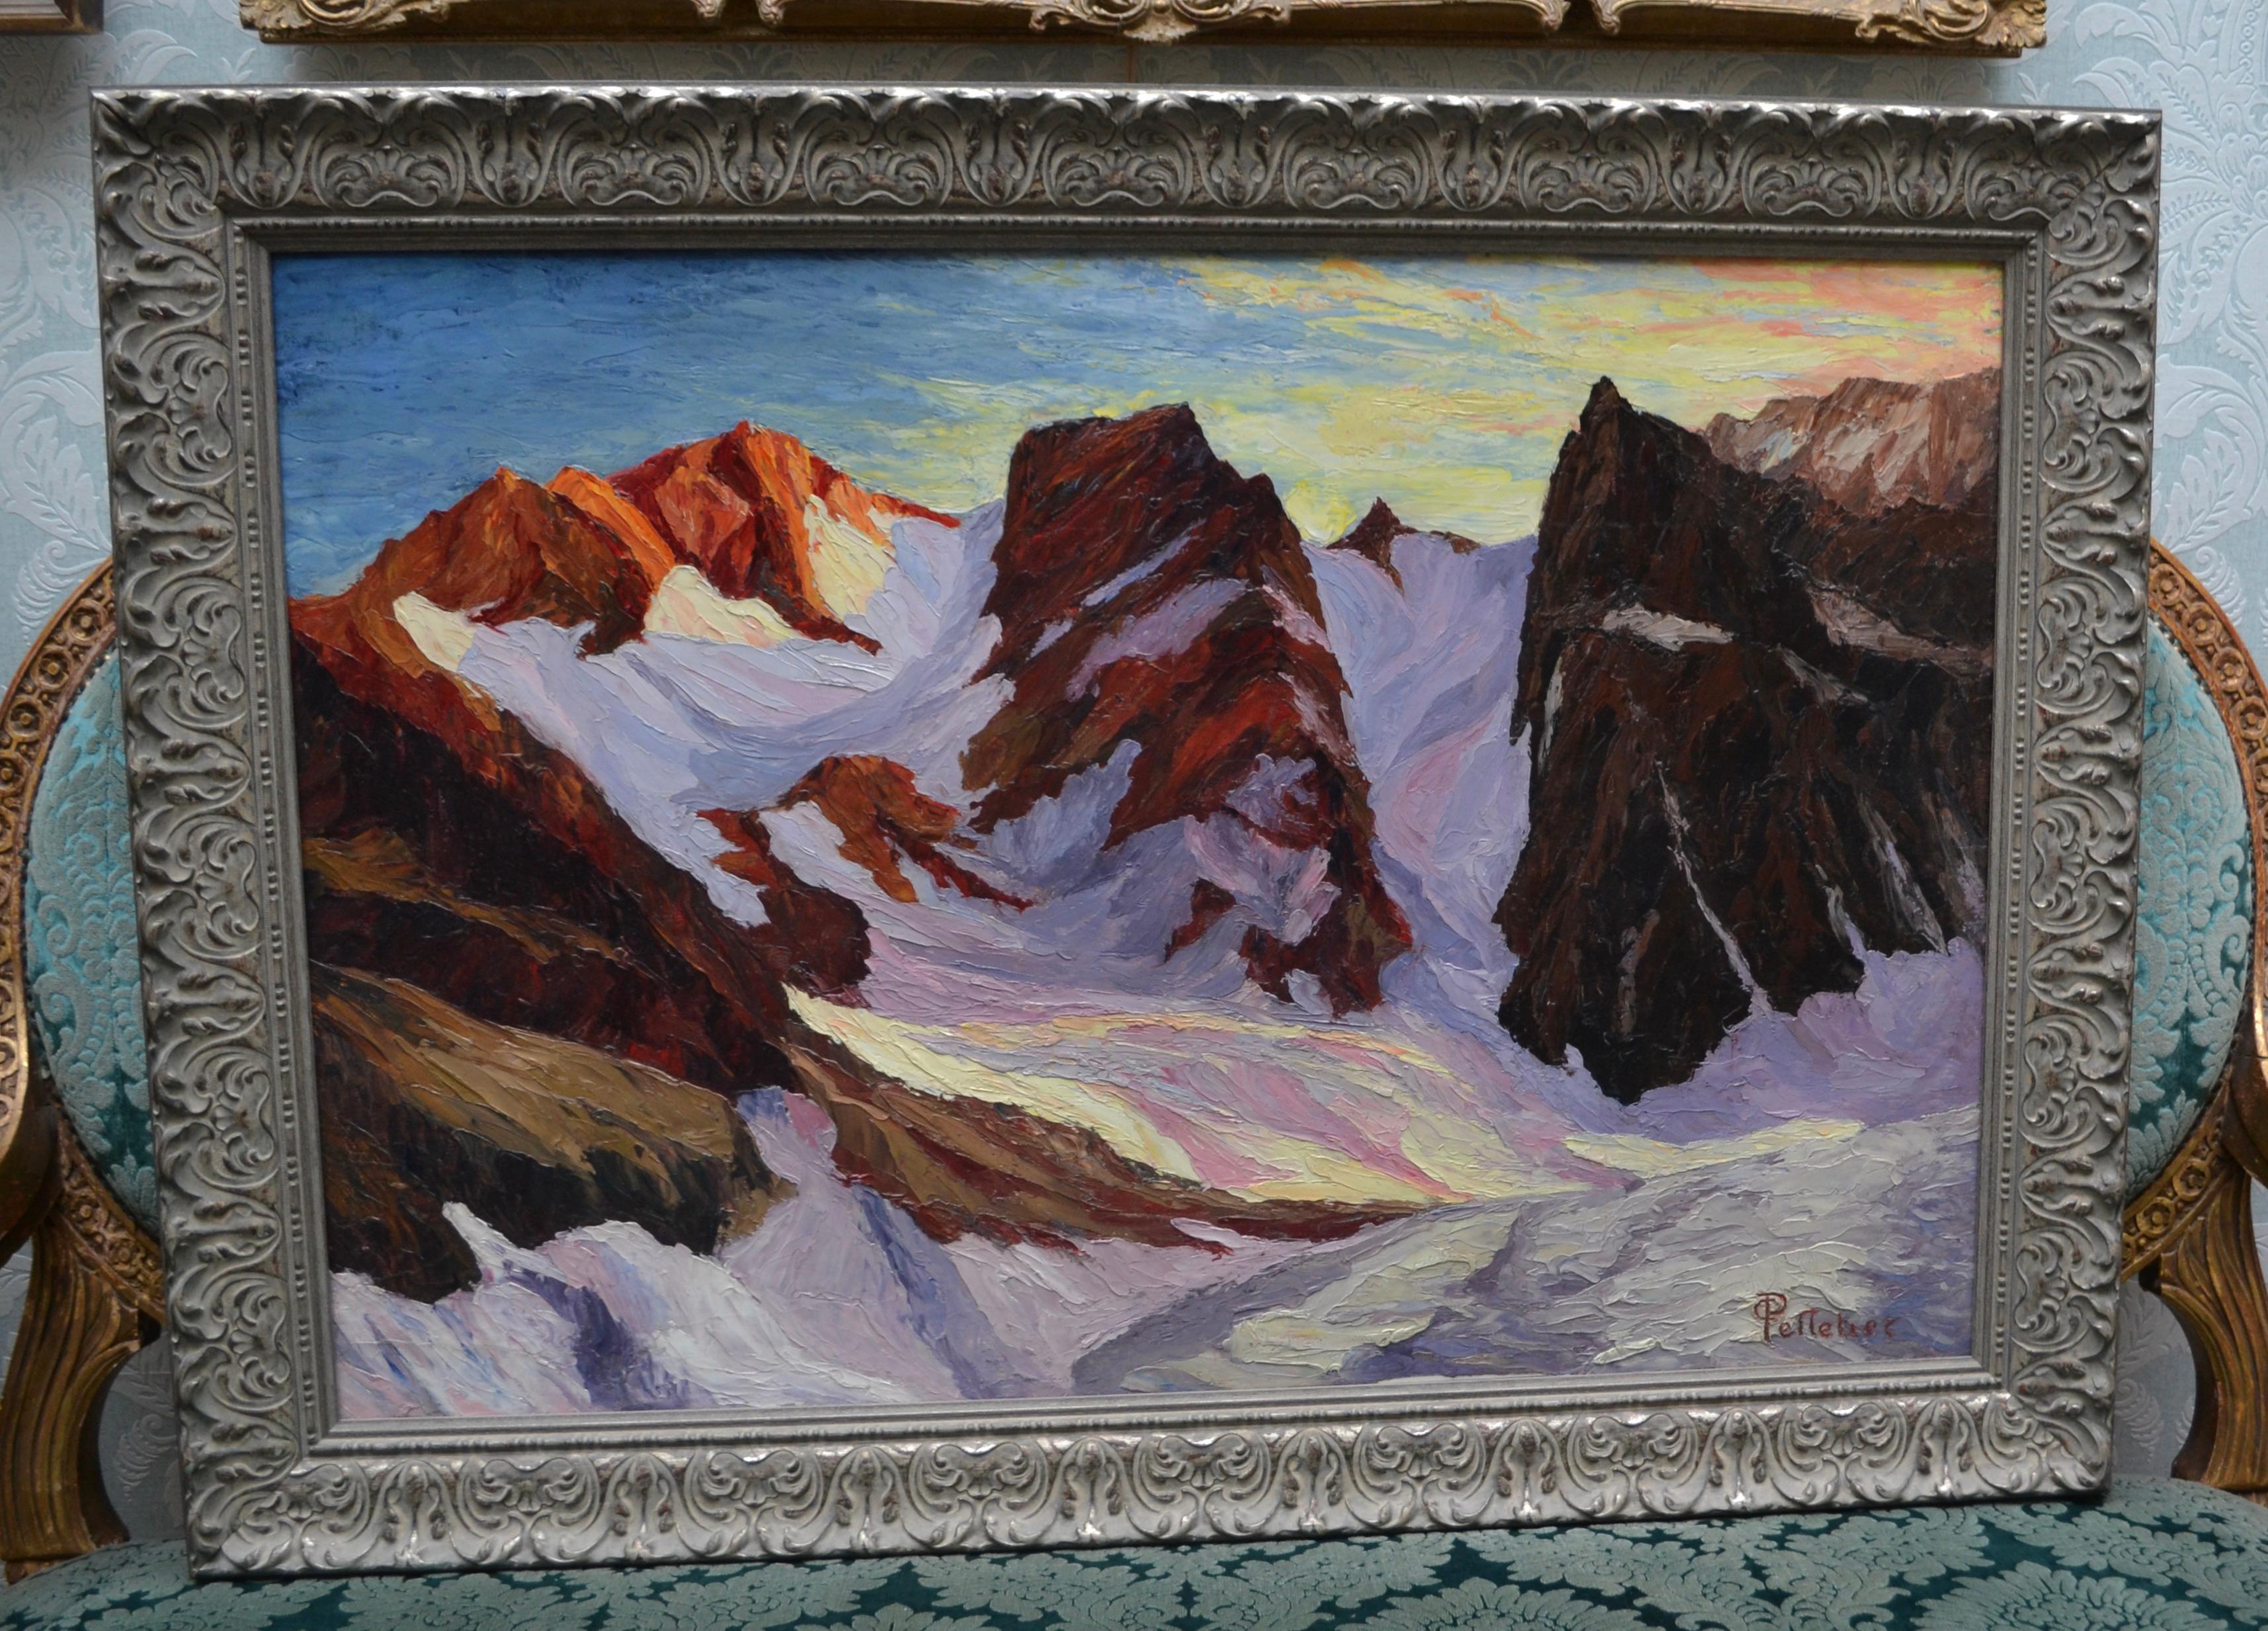 Cette peinture d'une scène de montagne alpine européenne avec un travail de pinceau très audacieux et distinctif est réalisée à l'huile sur papier, qui a été collé sur un carton multi-fibres. Signé Pelletier dans le coin inférieur droit avec une